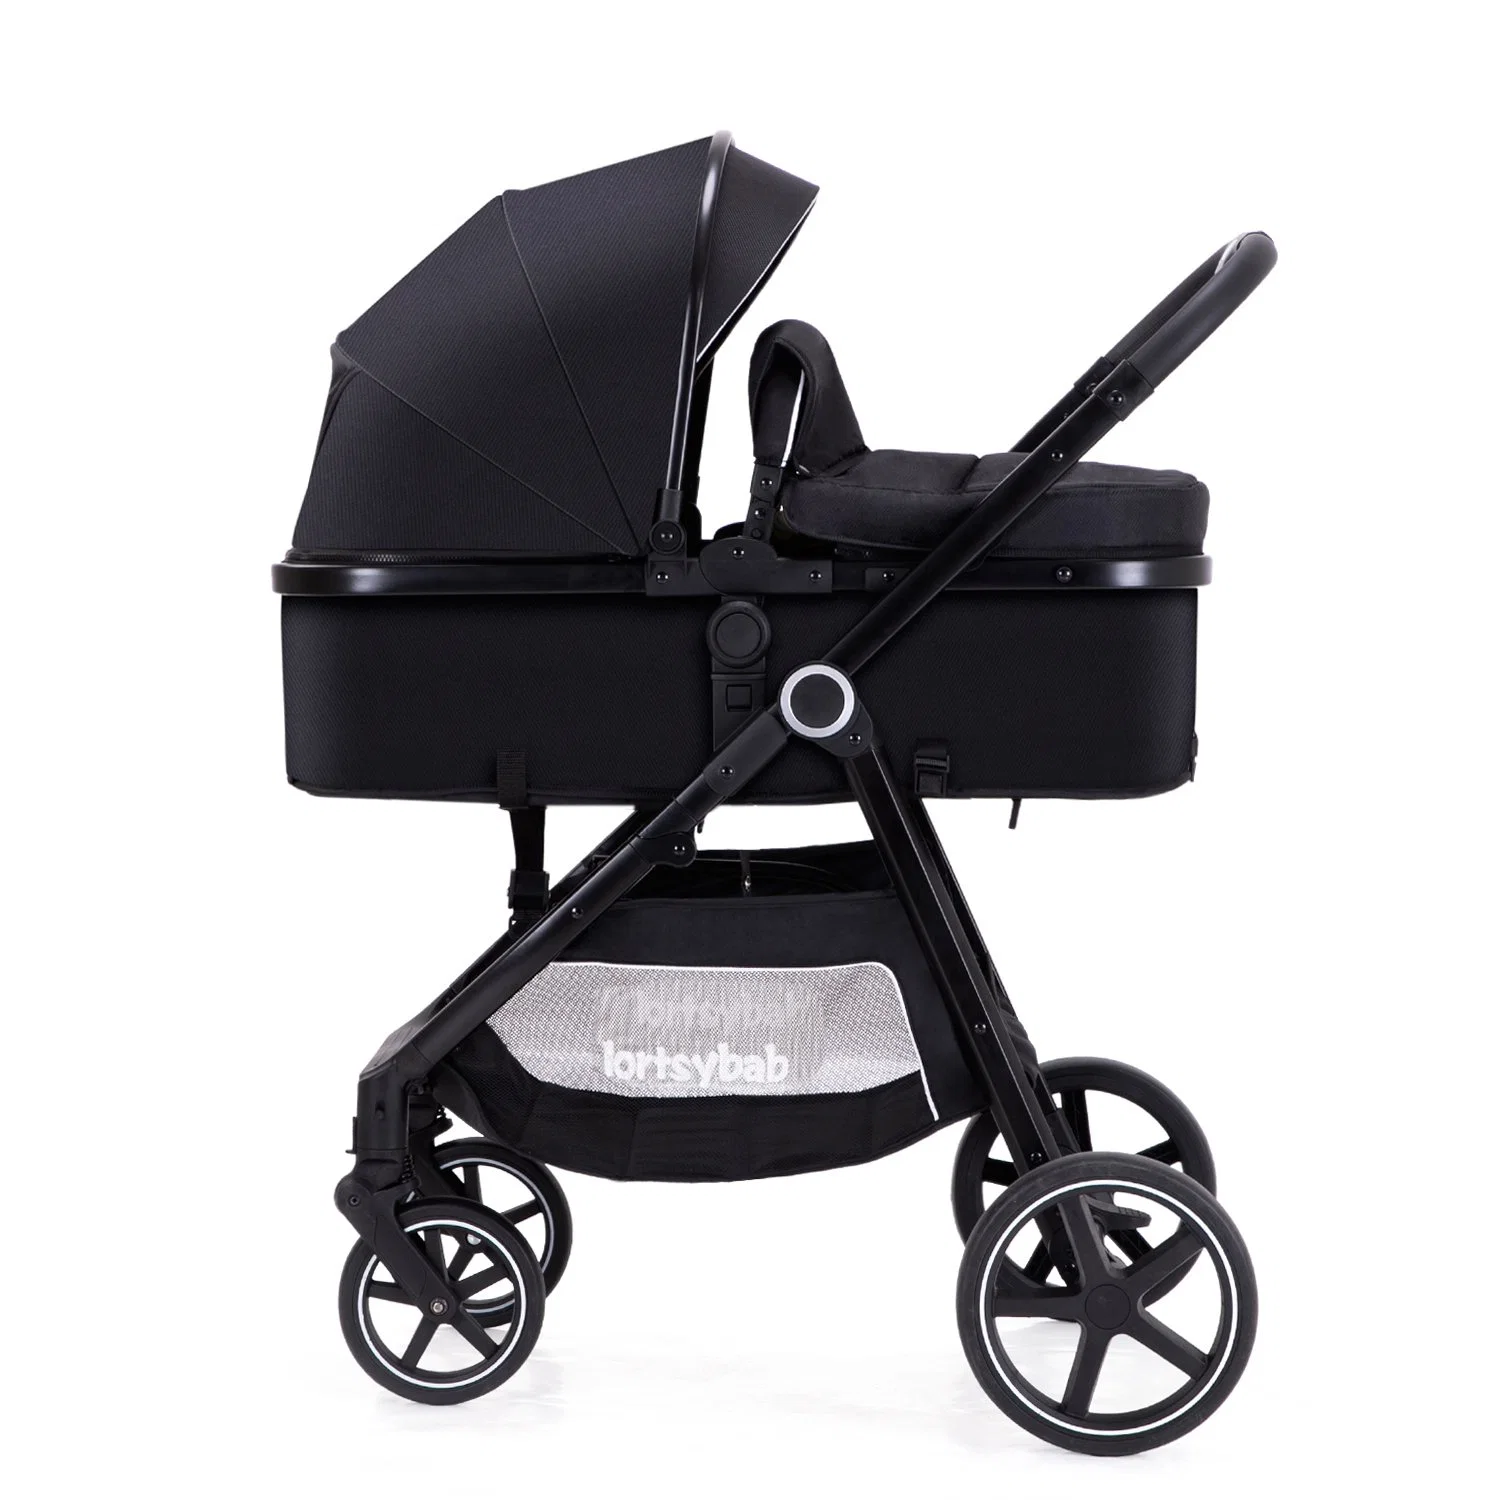 Оптовая торговля Intelligent хорошего качества детского Stroller легко носить с собой и складные Baby Stroller